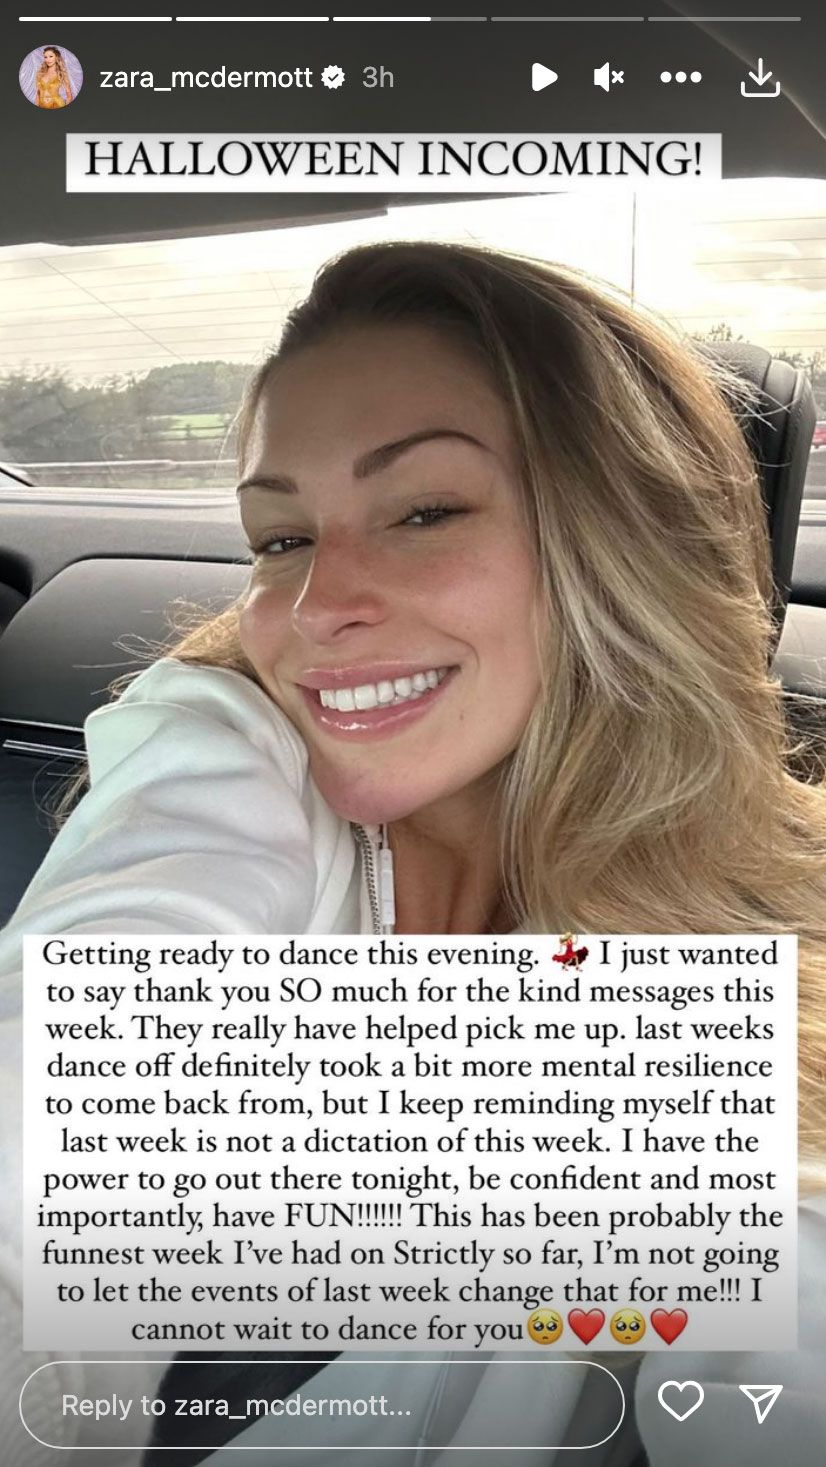 Zara McDermott smiles in a selfie on Instagram